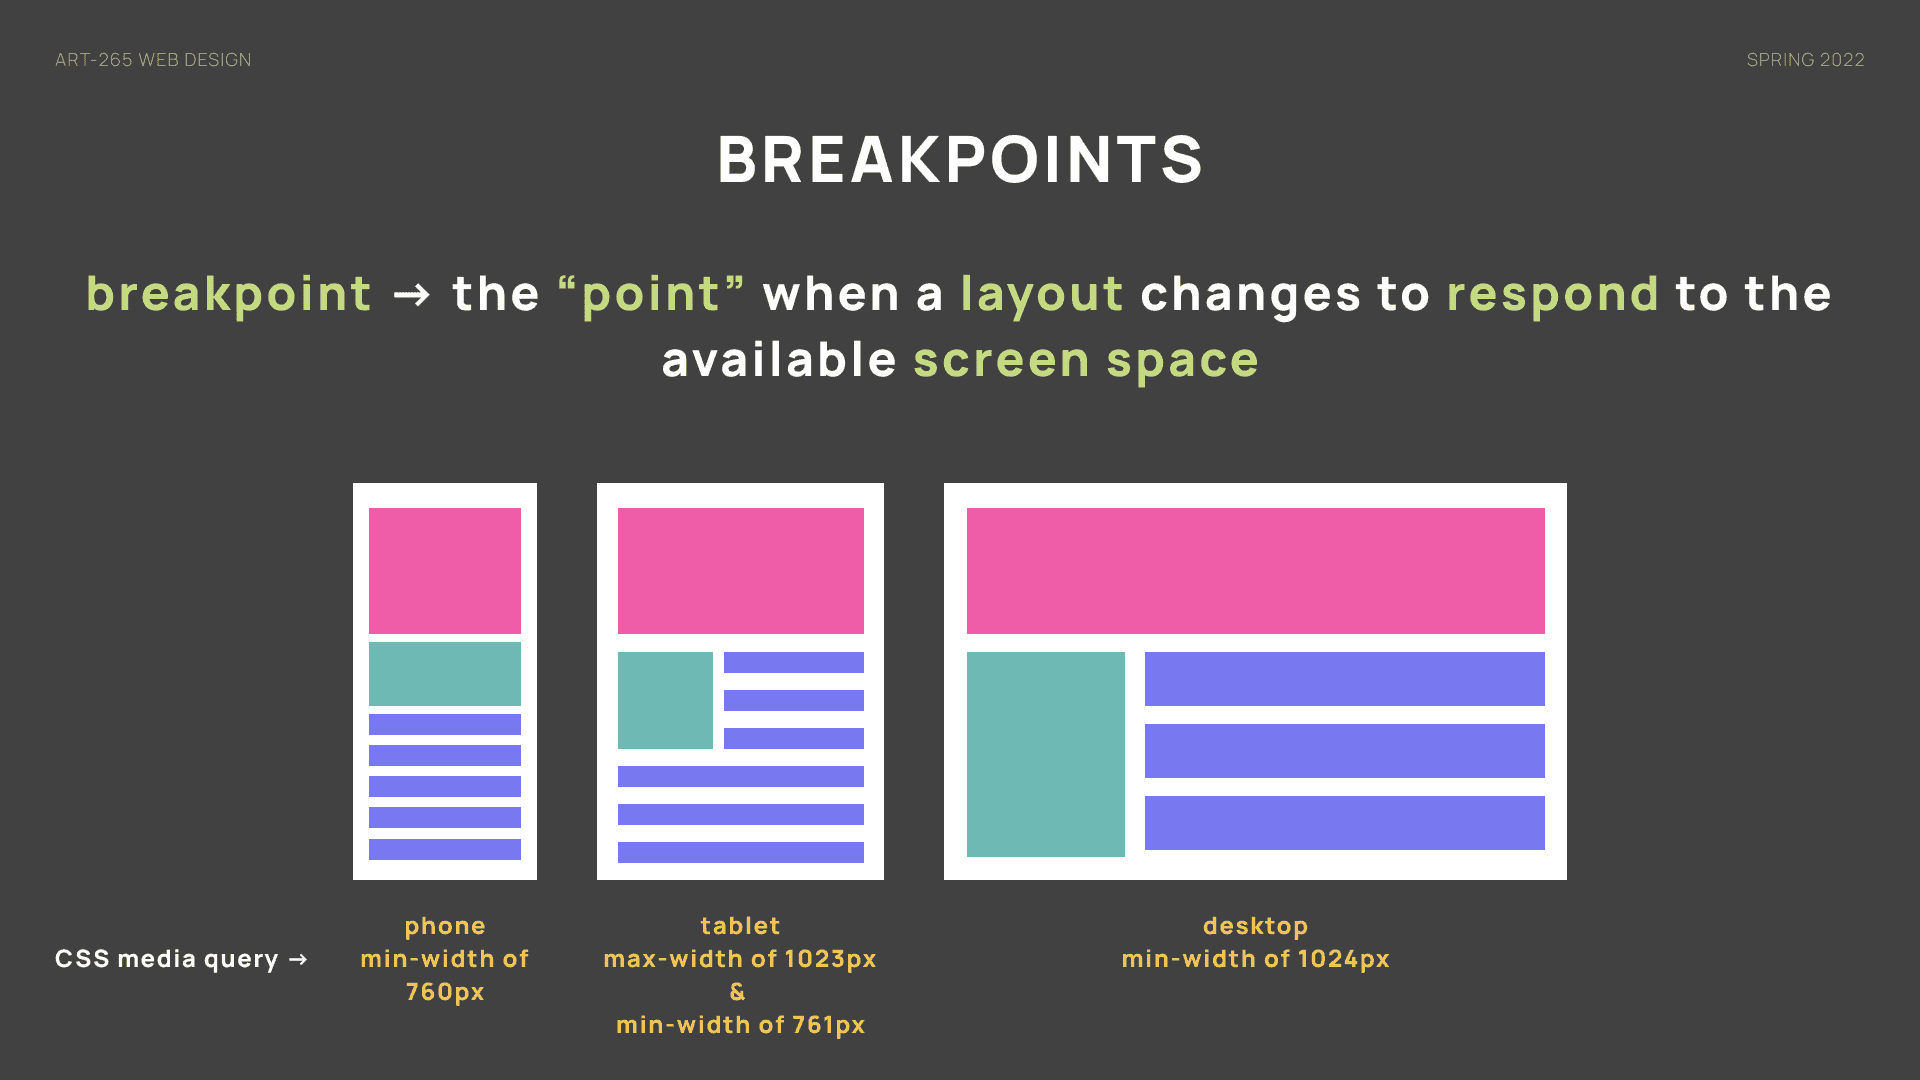 Breakpoints design slide